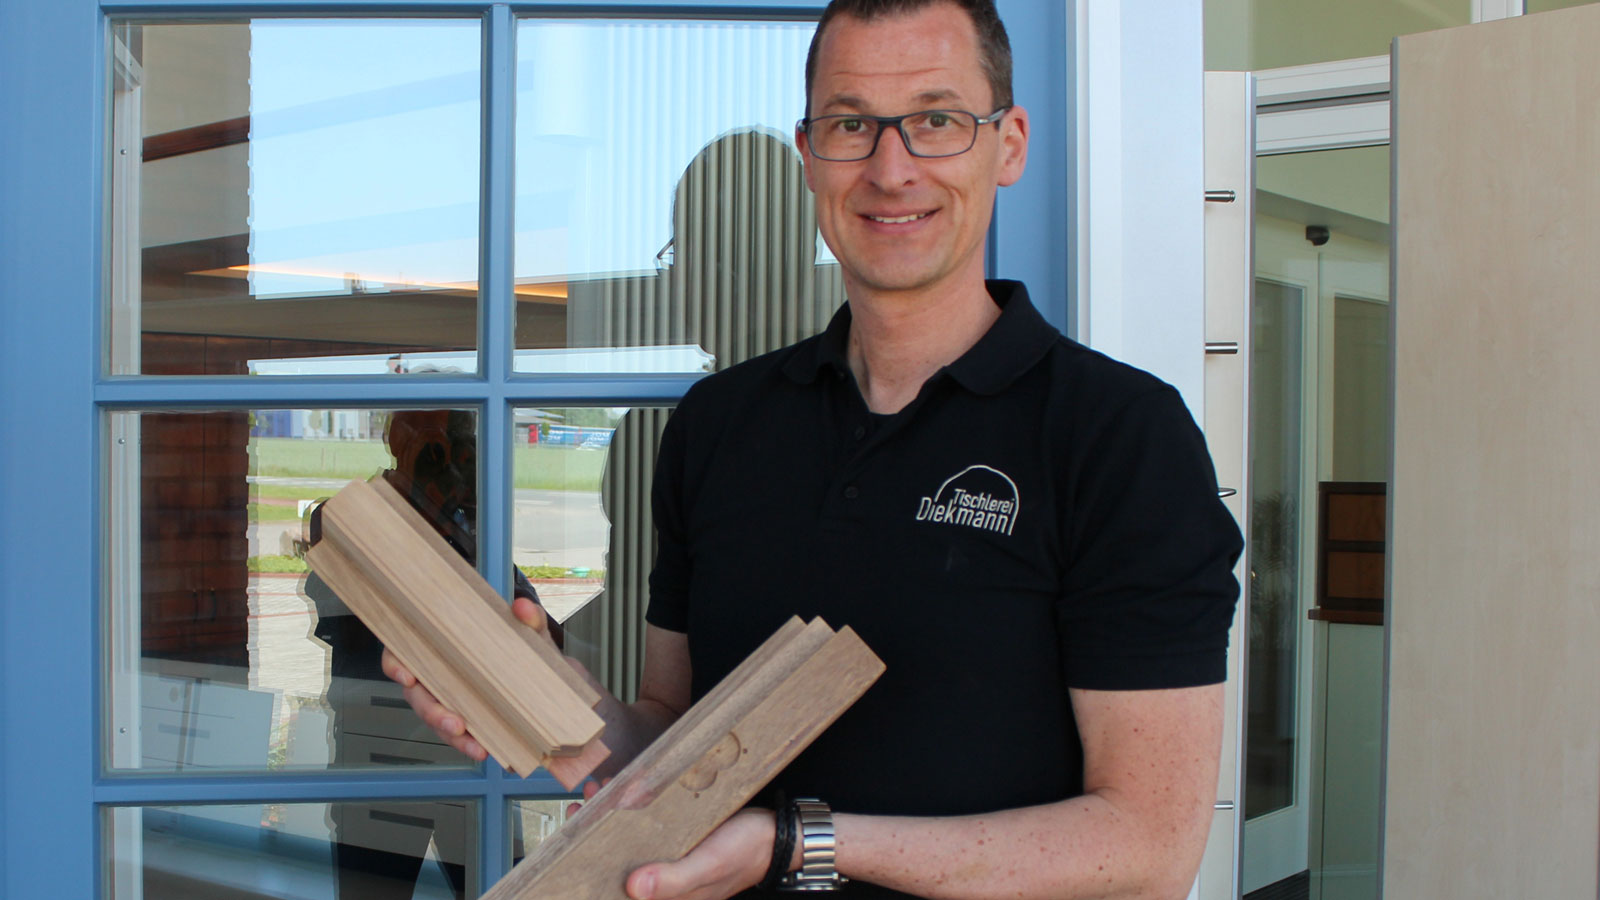 Fenster und Innenausbau aus einer Hand: Jürgen Diekmann hat Freude an der neuen Eckverbindung und der CNC-Komplettbearbeitung